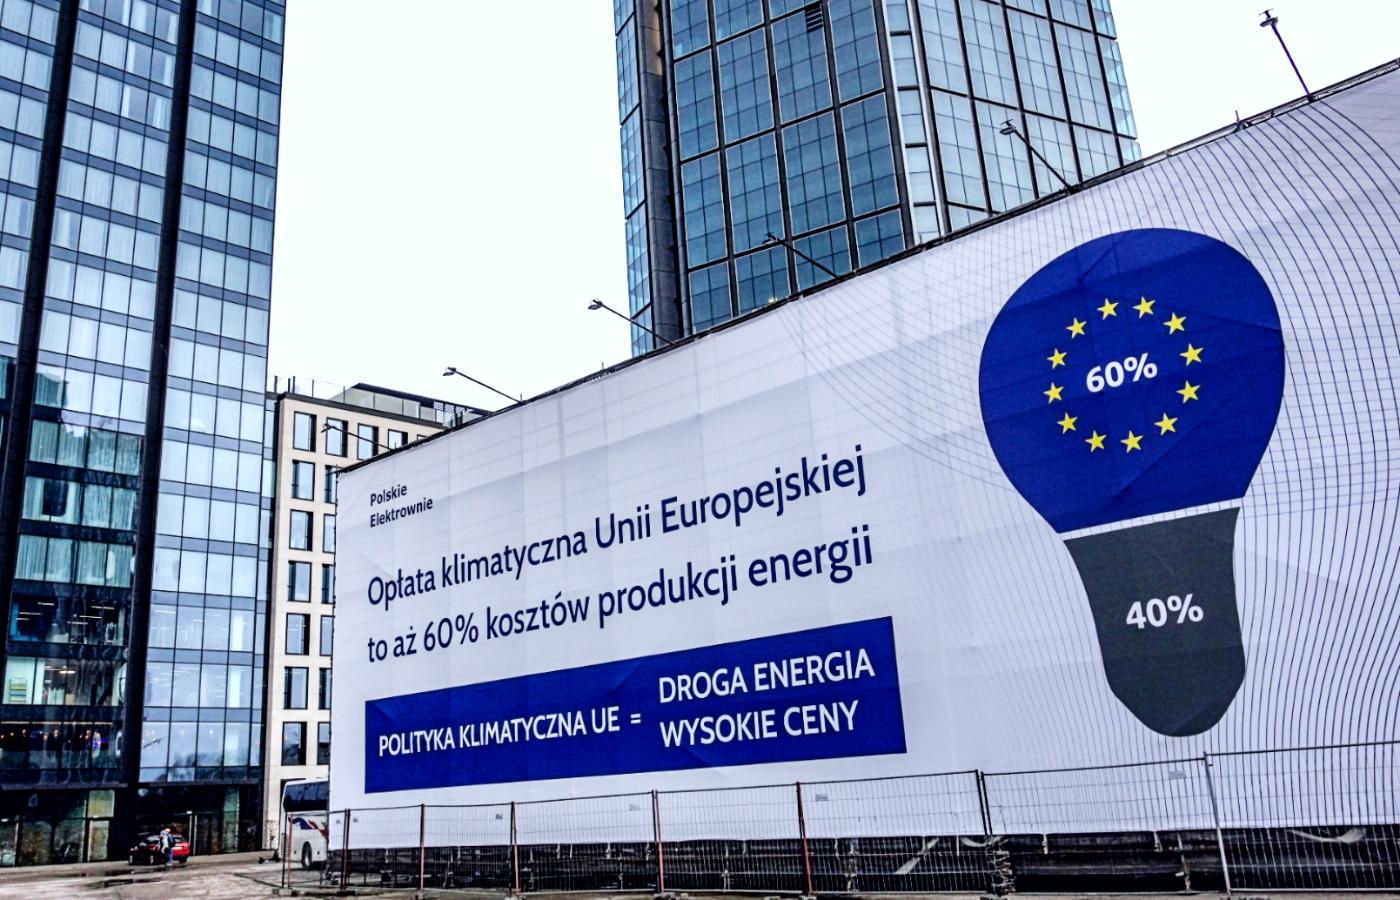 Billboard Grupy Elektrownie Polskie obarczający Unię Europejską winą za wysokie ceny prądu, luty 2022 r.